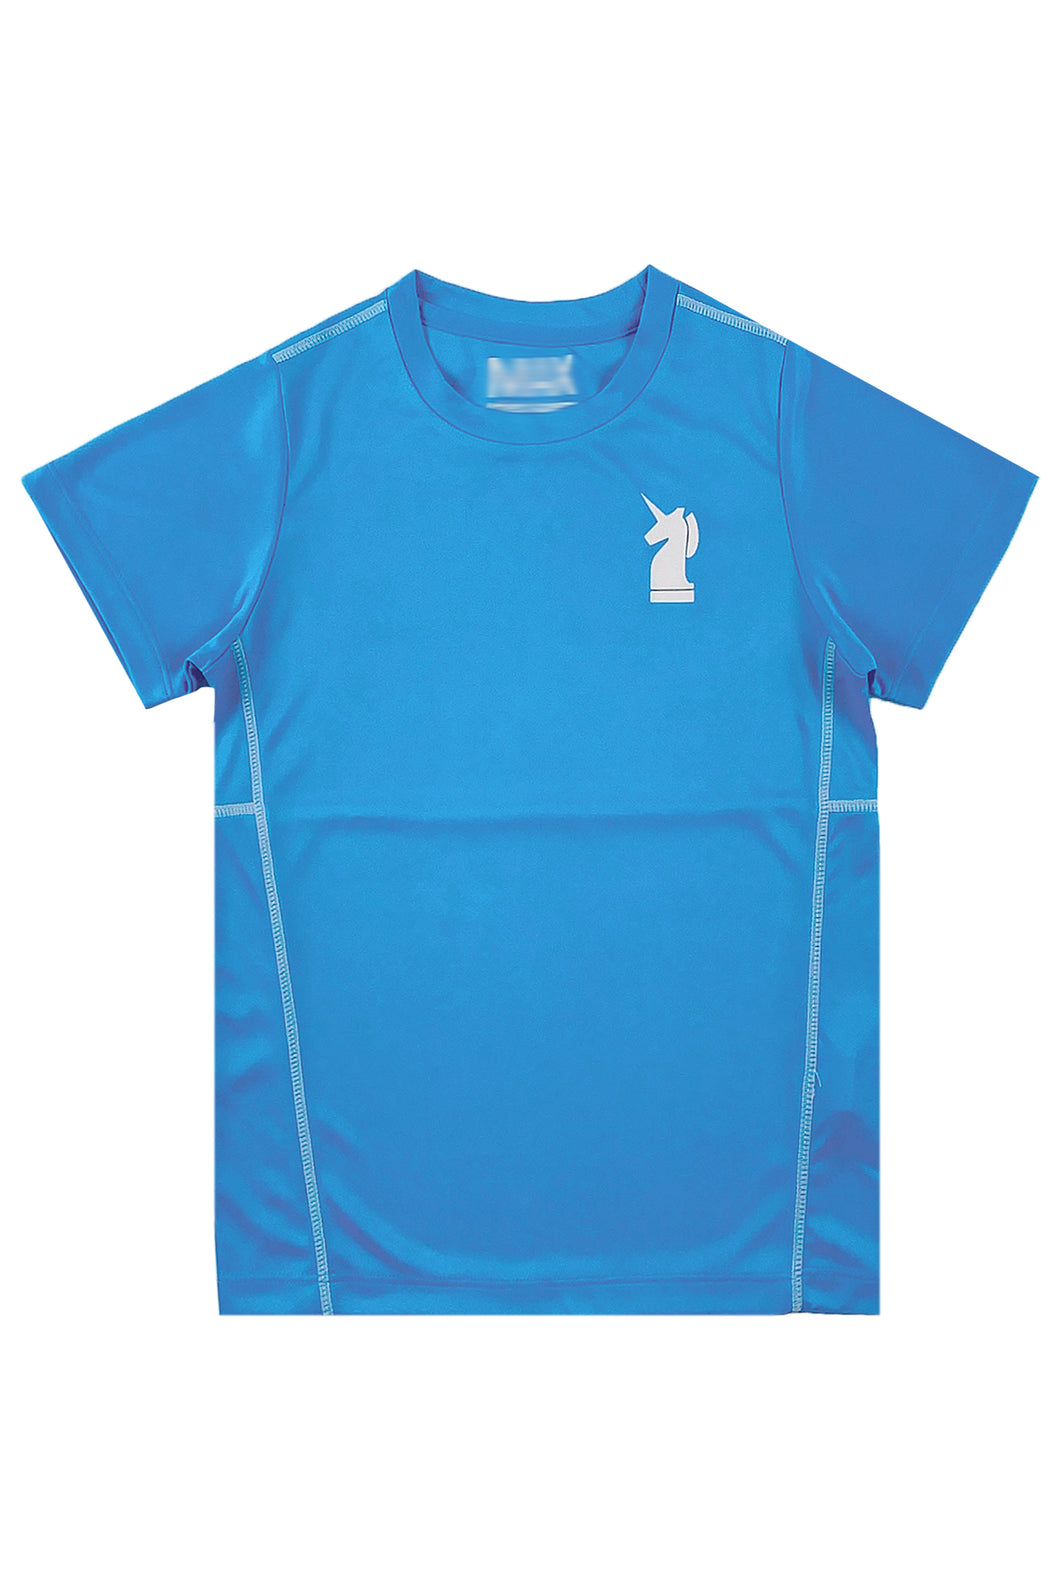 網上下單訂購藍色短袖T恤  圓領短袖T恤  T1120